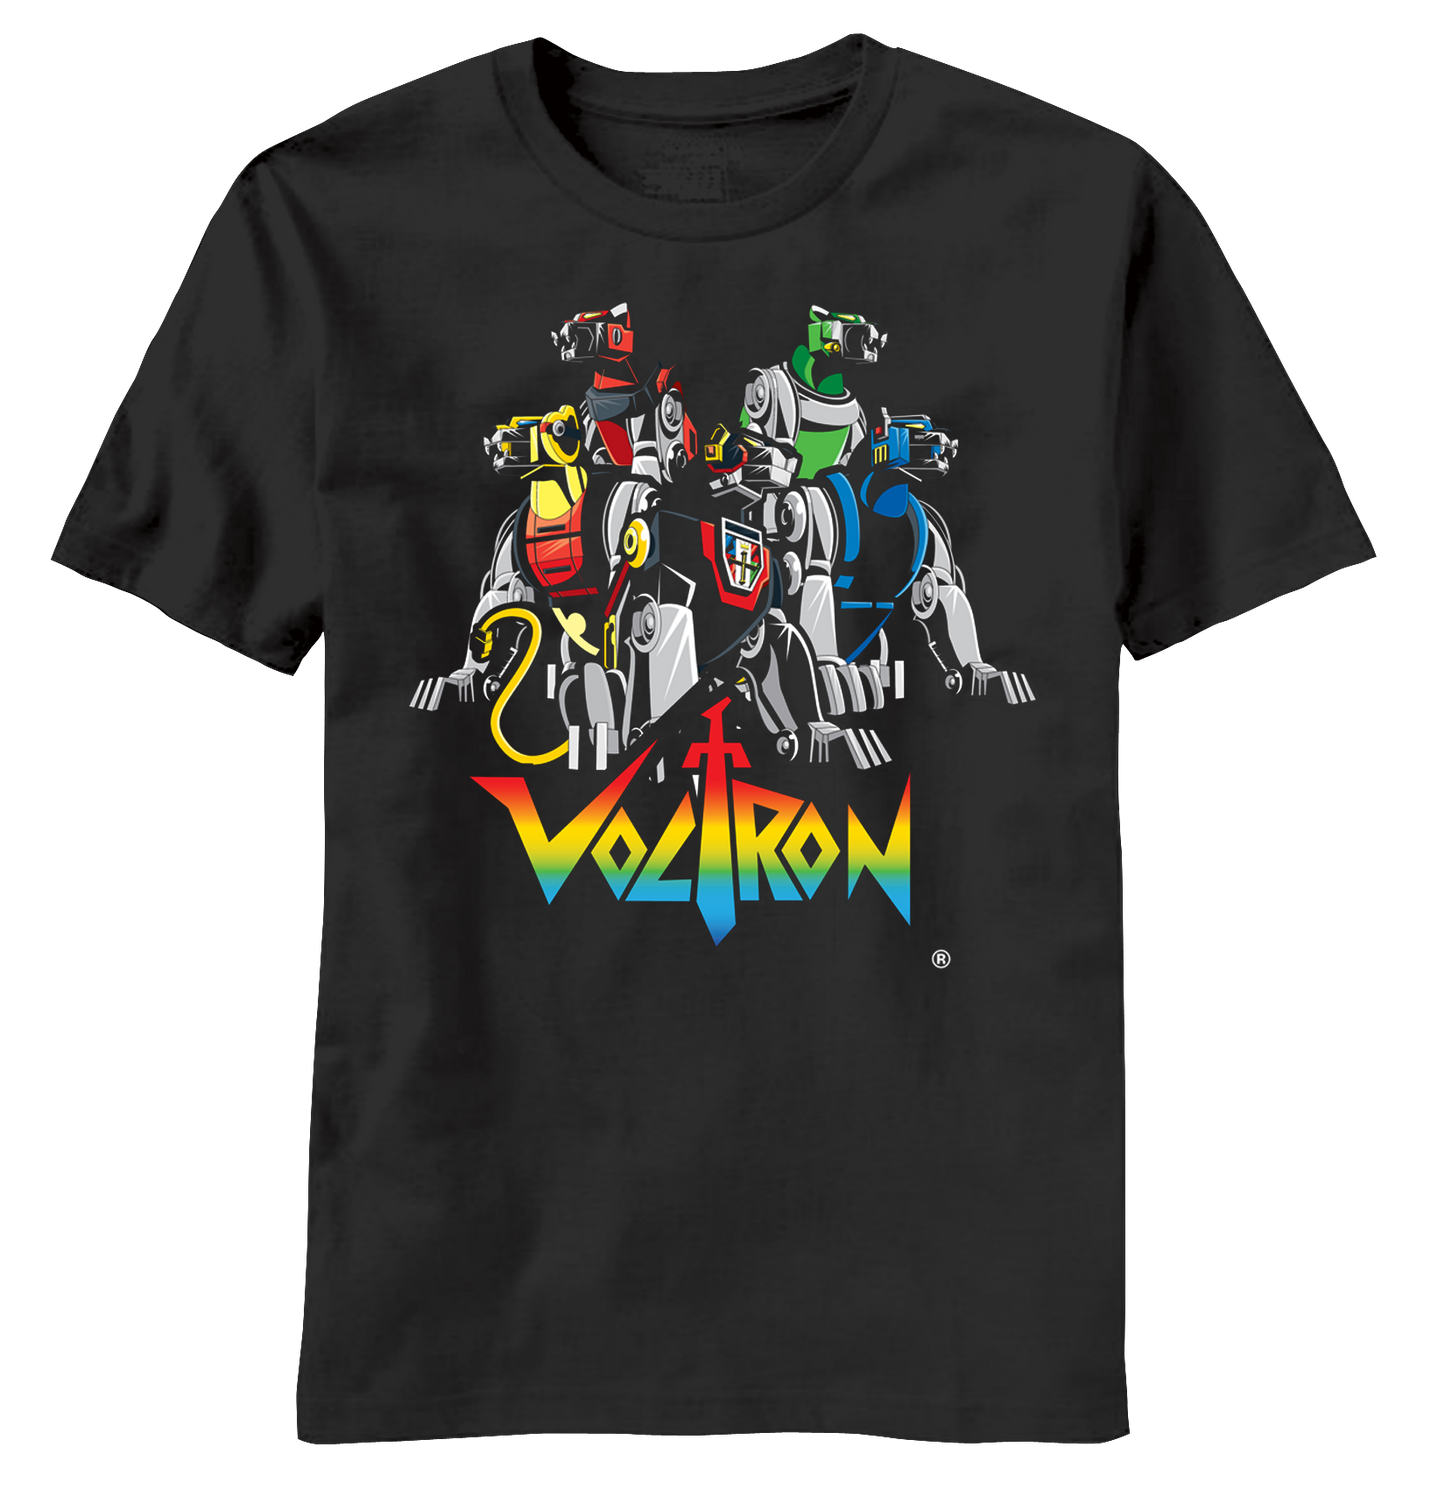 Voltron "Five Lions" Men's T-Shirt